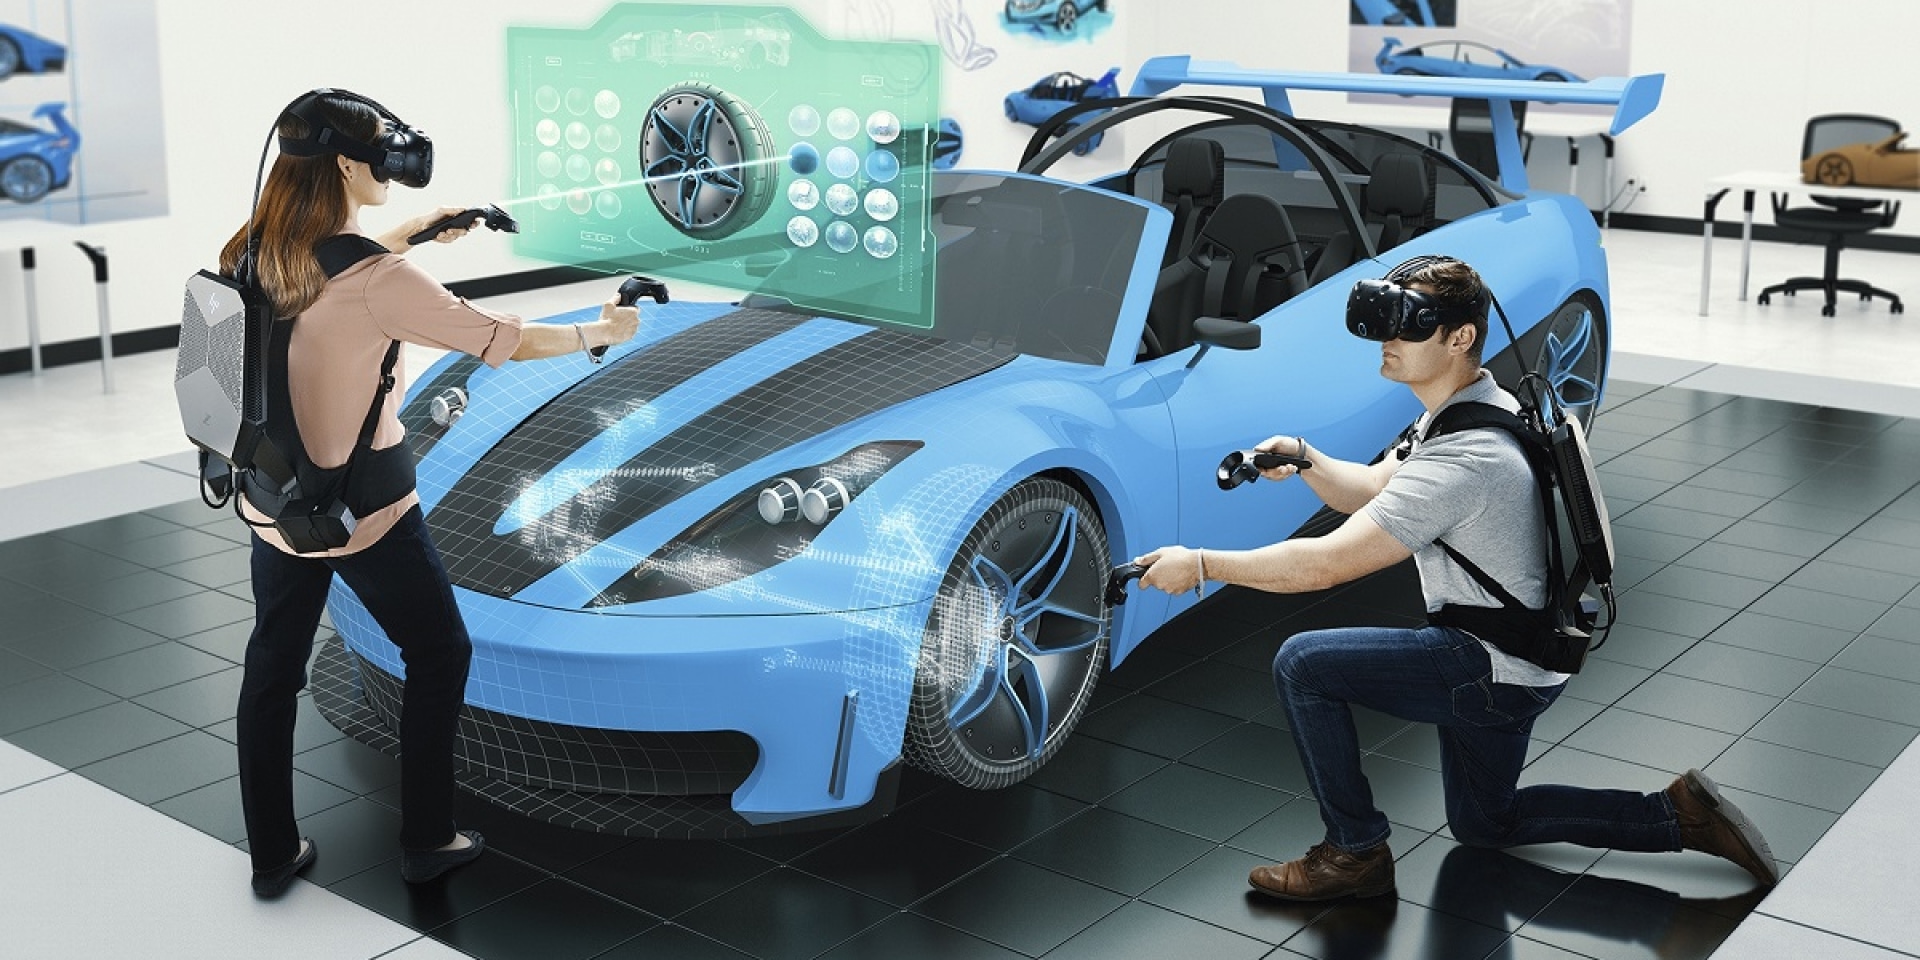 車輛設計大未來。HP Z VR虛擬實境背包電腦